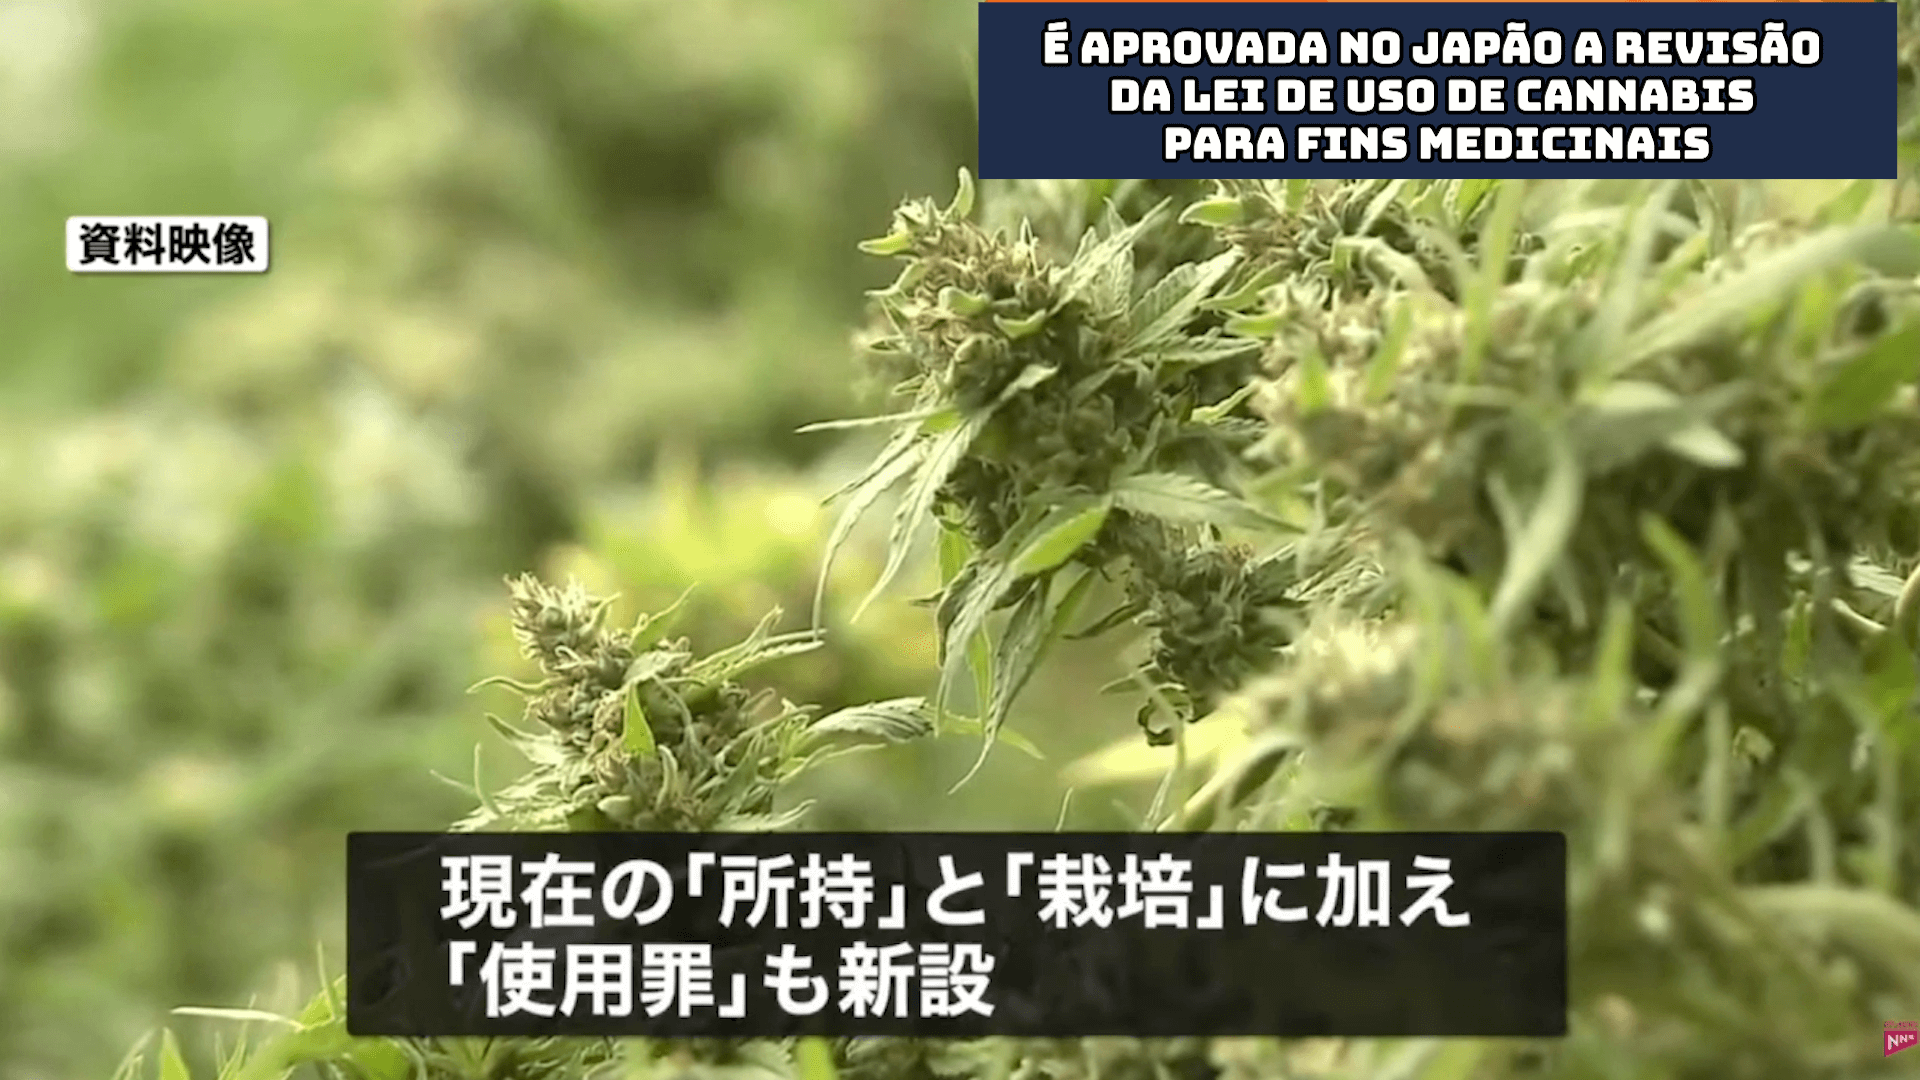 É aprovada no Japão a revisão da Lei de uso de cannabis para fins medicinais